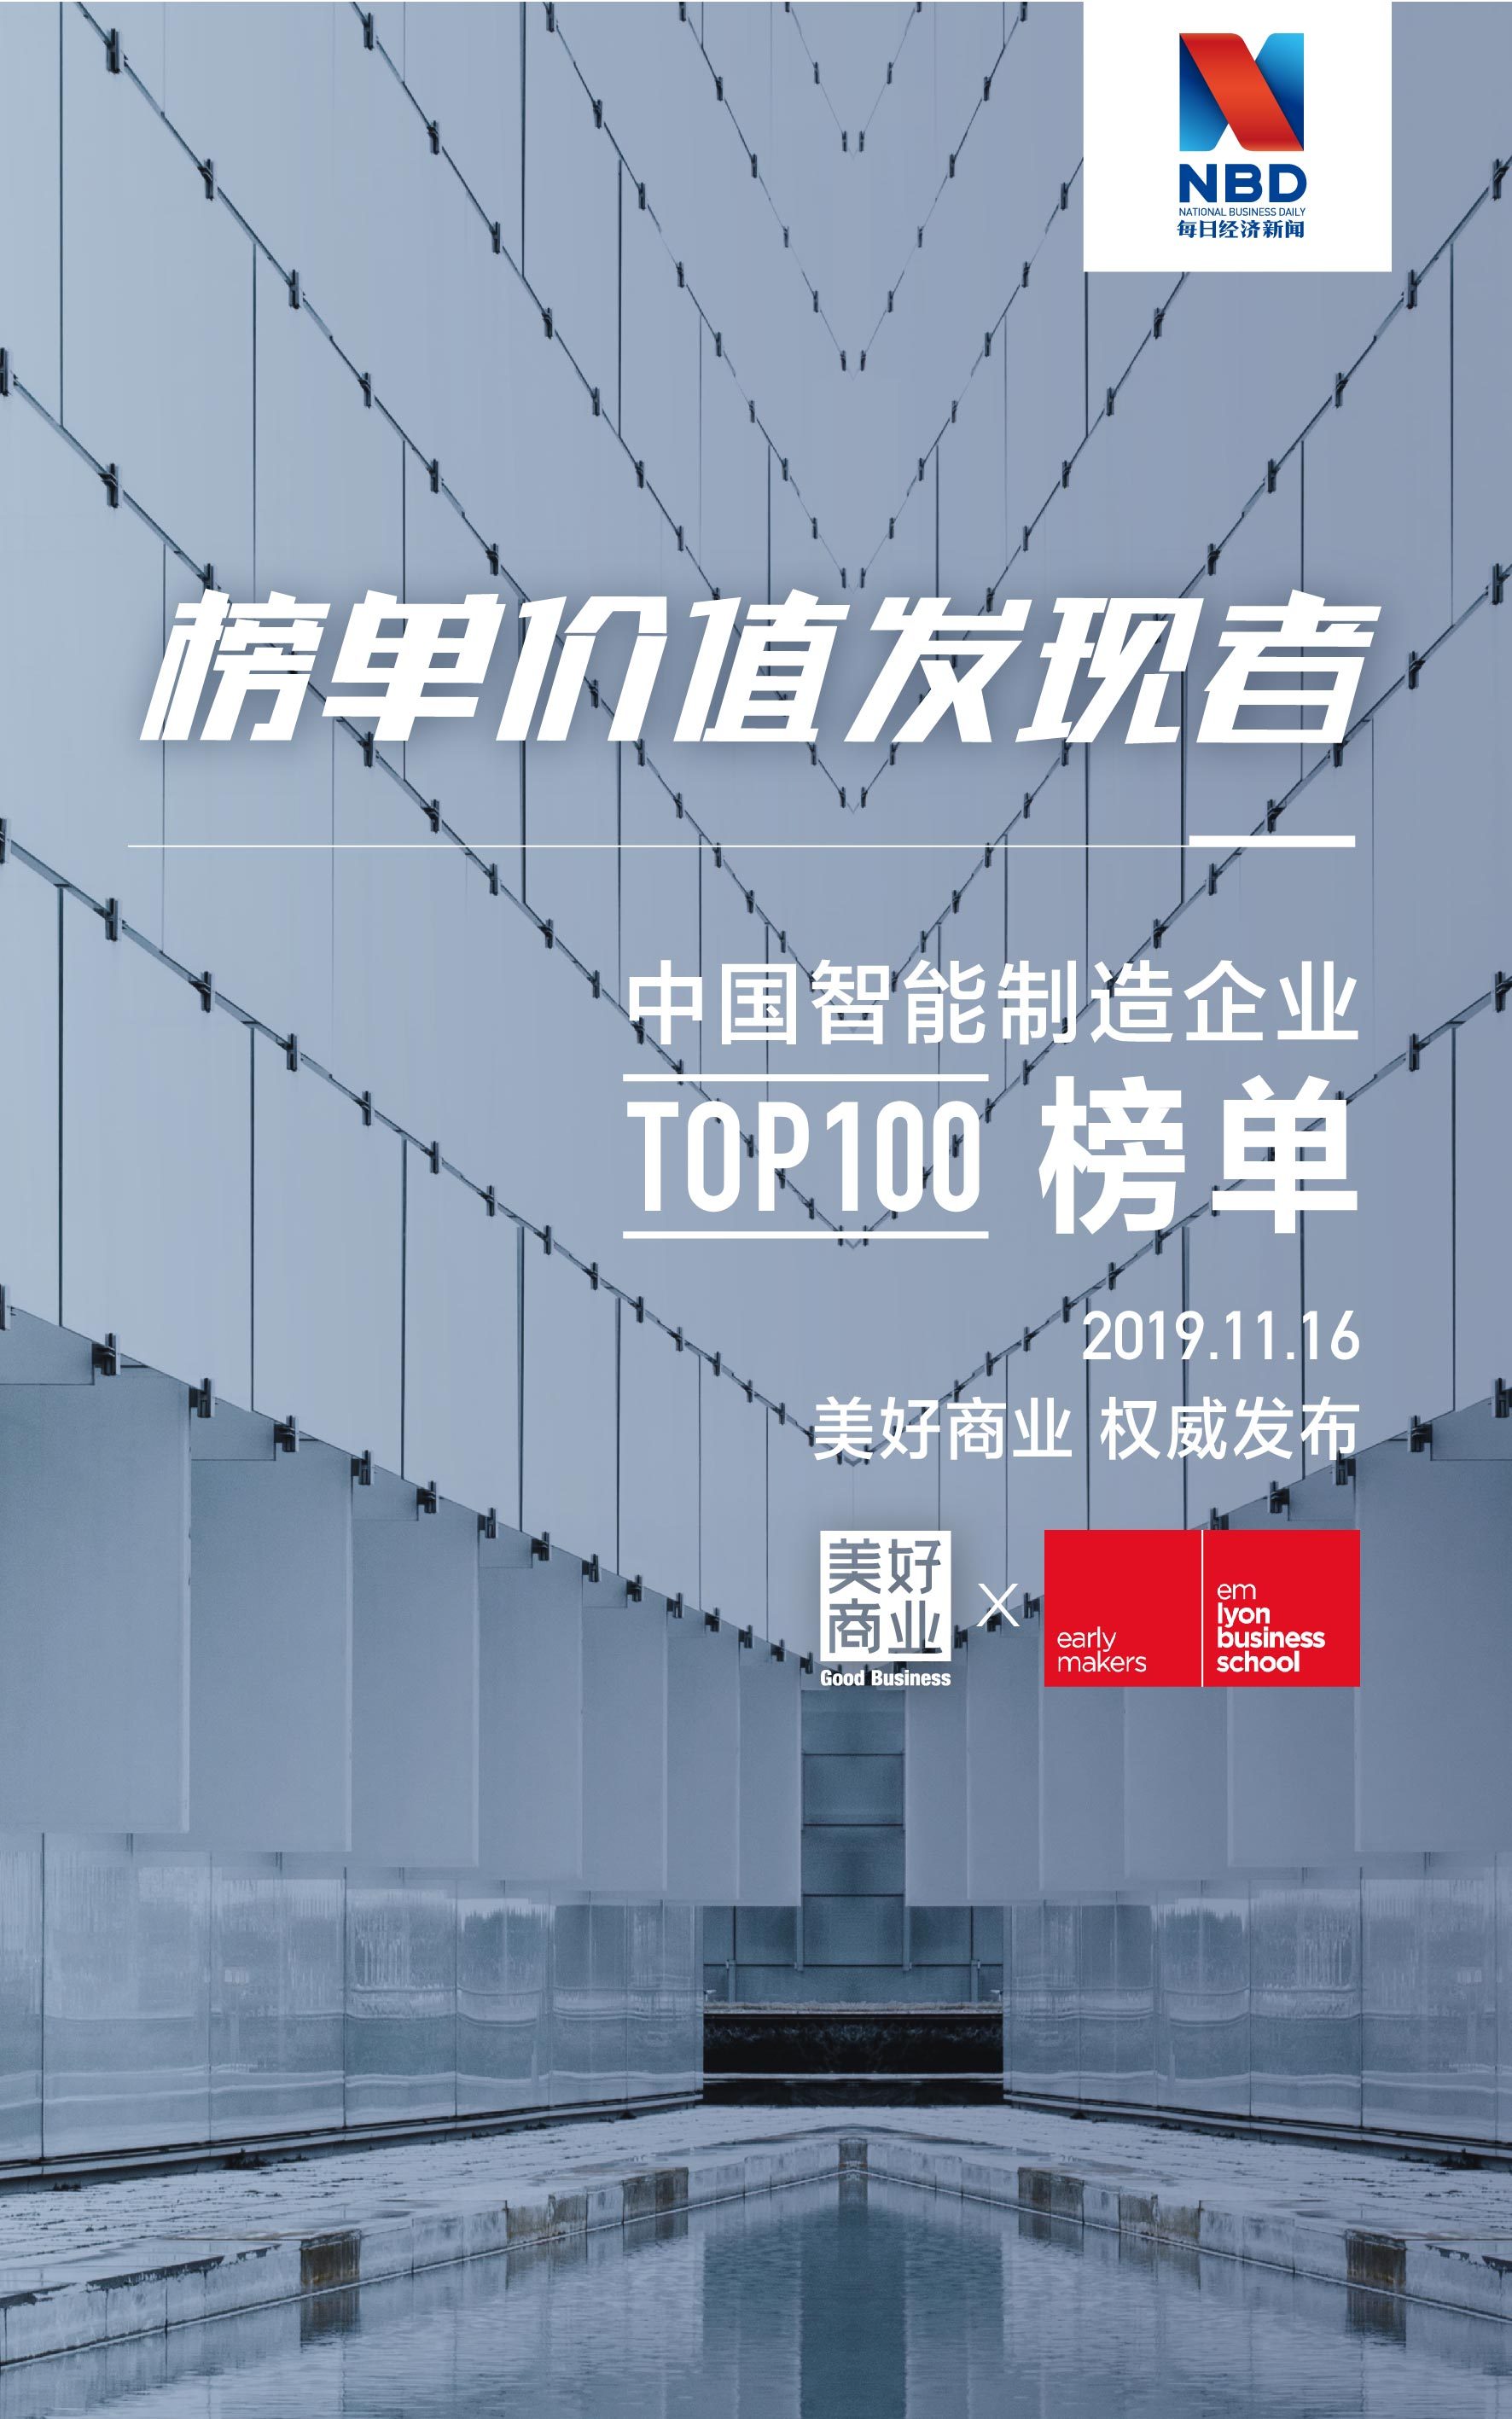 每日经济新闻联手法国里昂商学院发布《中国智能制造排行榜TOP100》榜单富士康拔得头筹